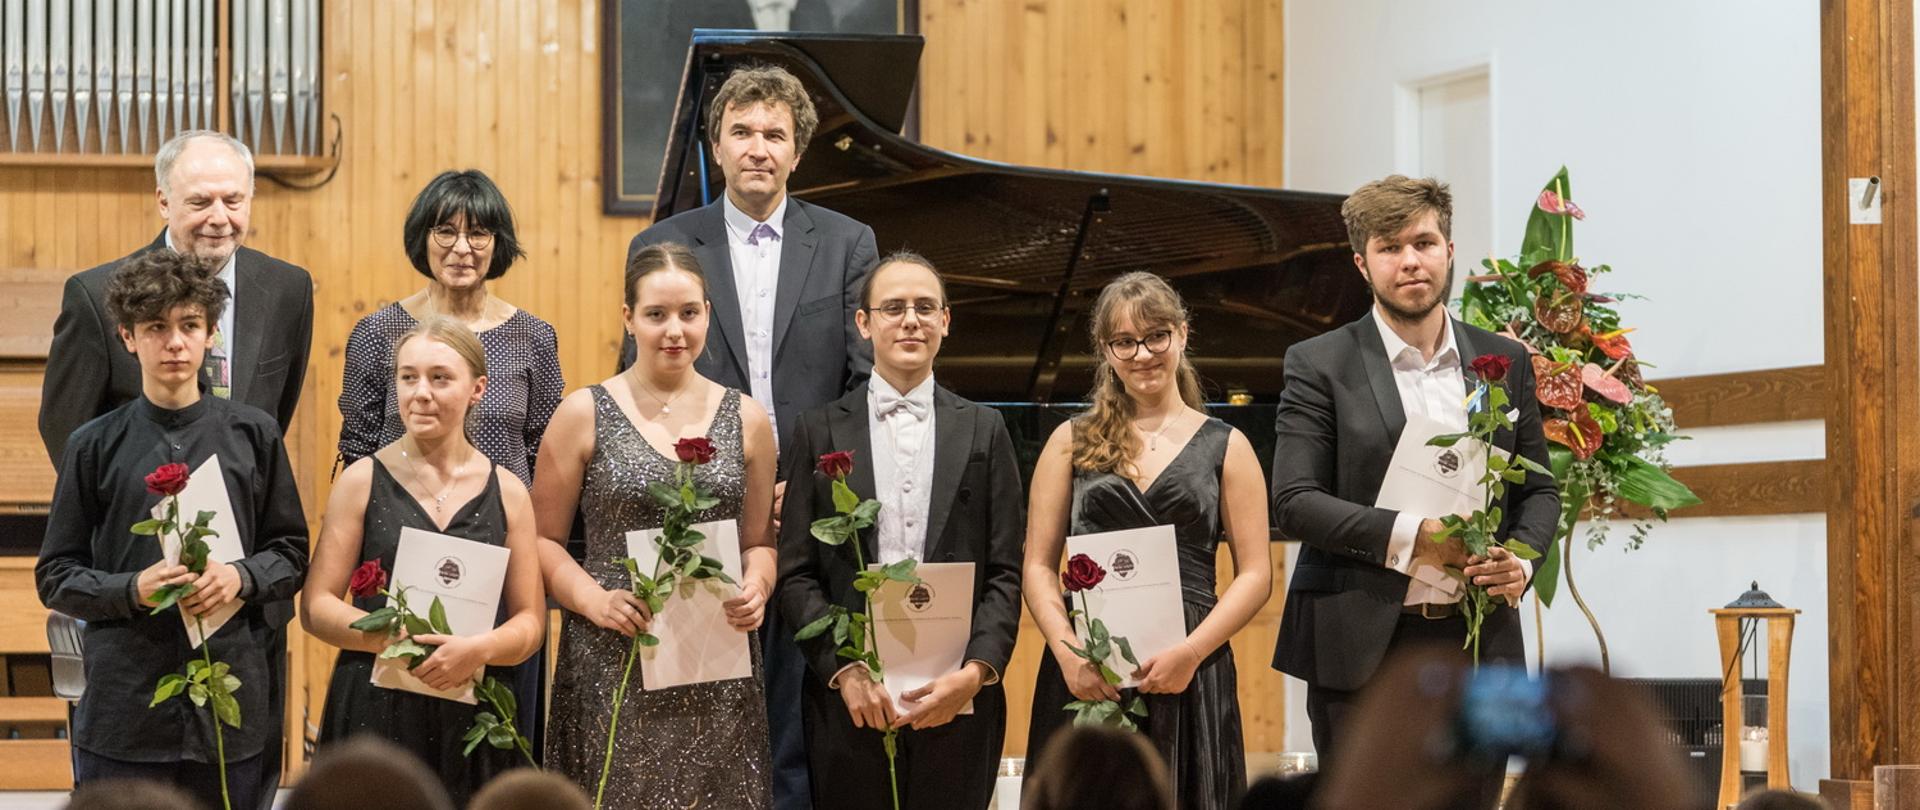 Zdjęcie przedstawia Laureatów i Jurorów XVIII Festiwalu Pianistycznego Chopinowskie Interpretacje Młodych, stojących na scenie w strojach galowych z dyplomami i kwiatami. Jurorzy stoją w drugim rzędzie, widać publiczność, w tle fortepian i portret I. J, Paderewskiego.